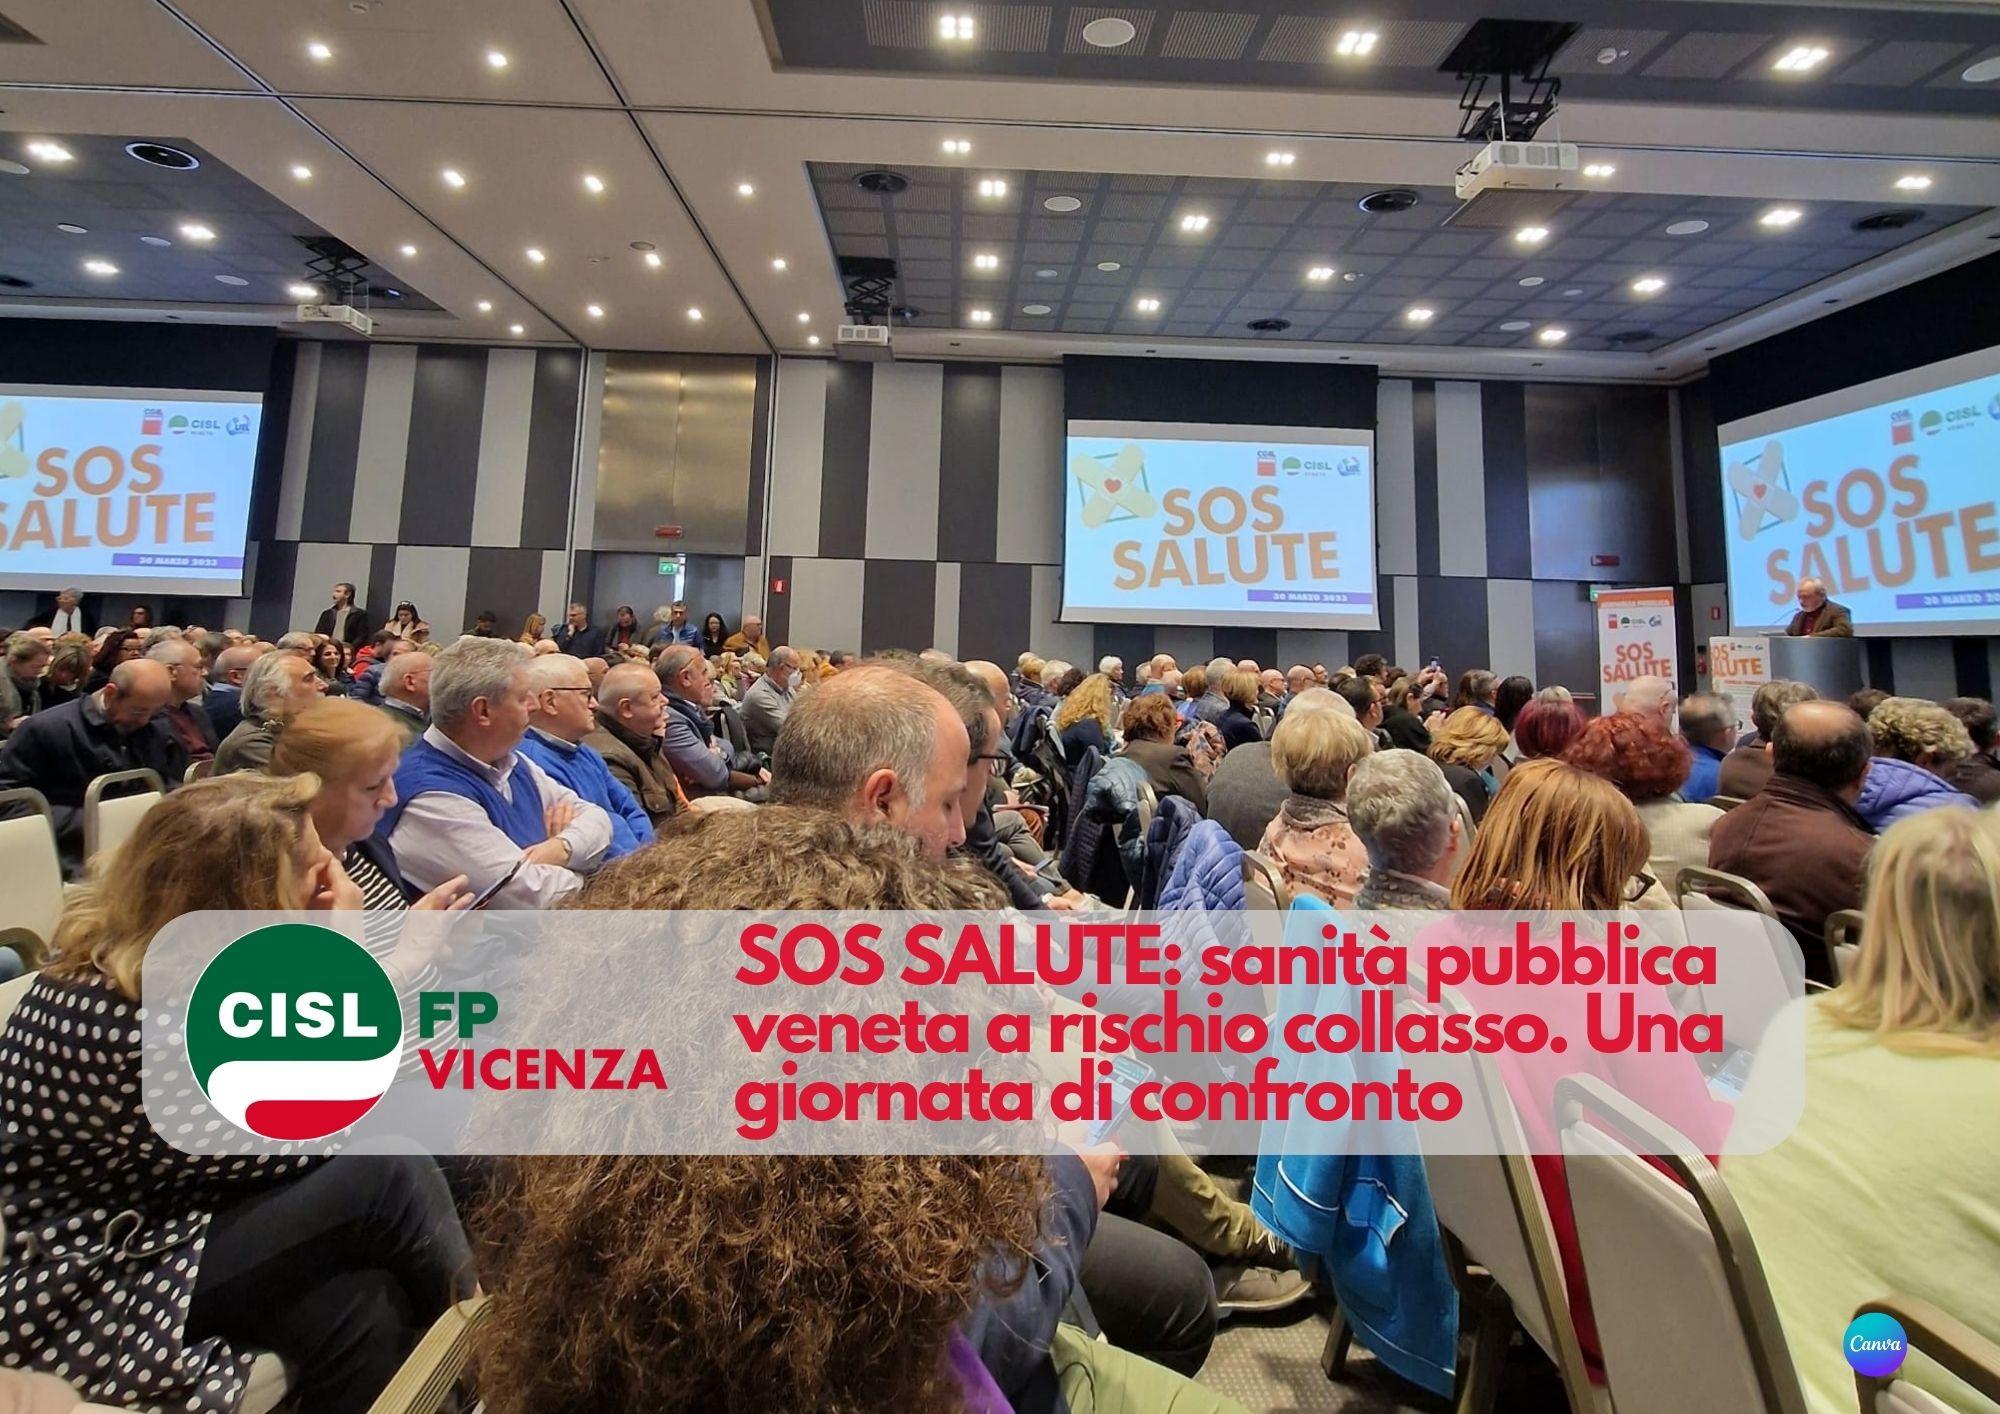 CISL FP Vicenza. SOS SALUTE: sanità pubblica veneta a rischio collasso. Una giornata di confronto